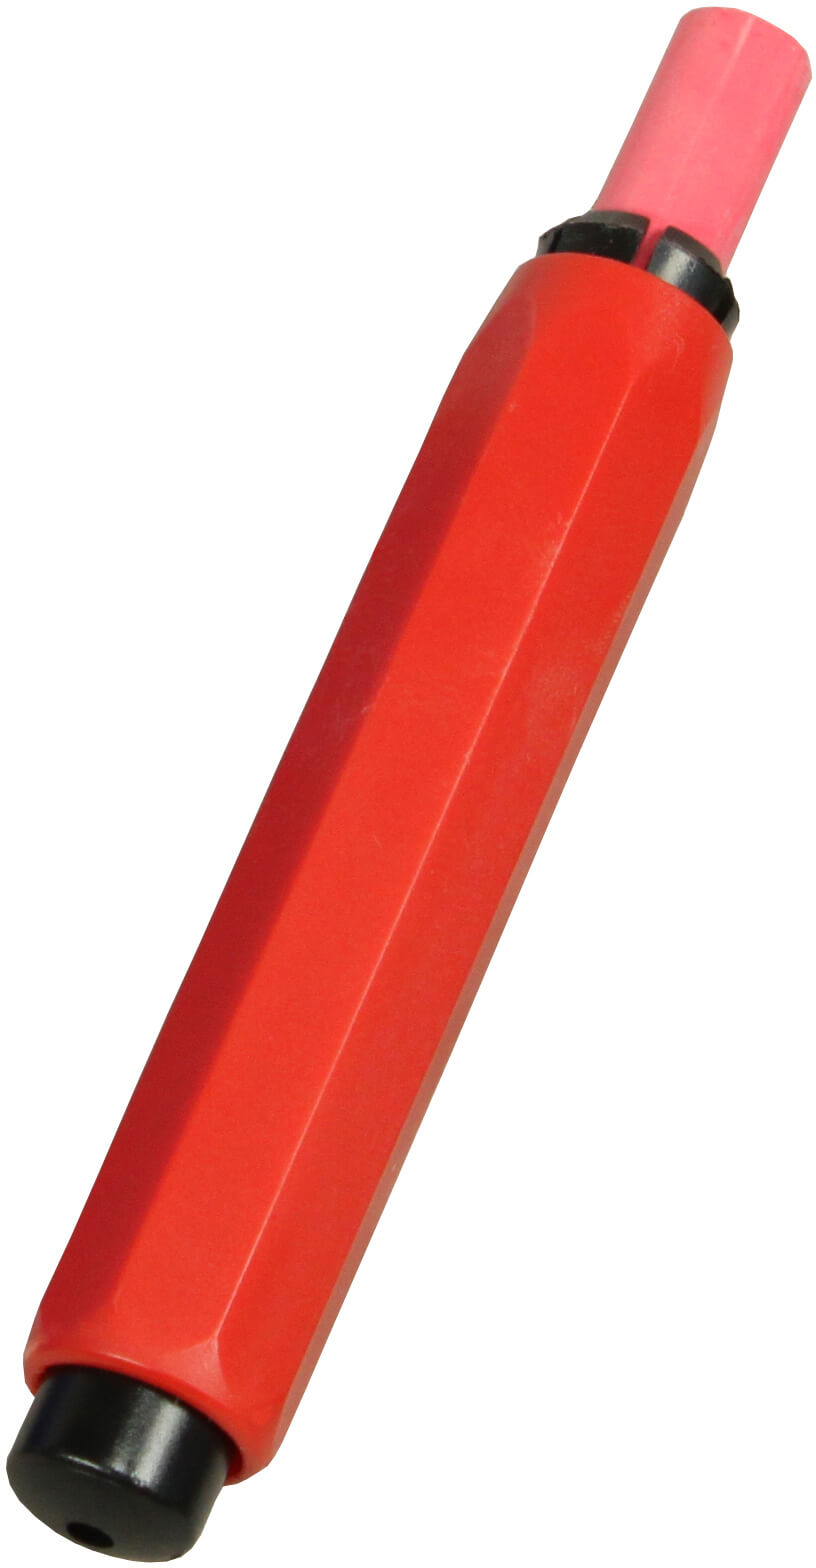 Kreidehalter für Robercolorkreide rot (1 Stück)